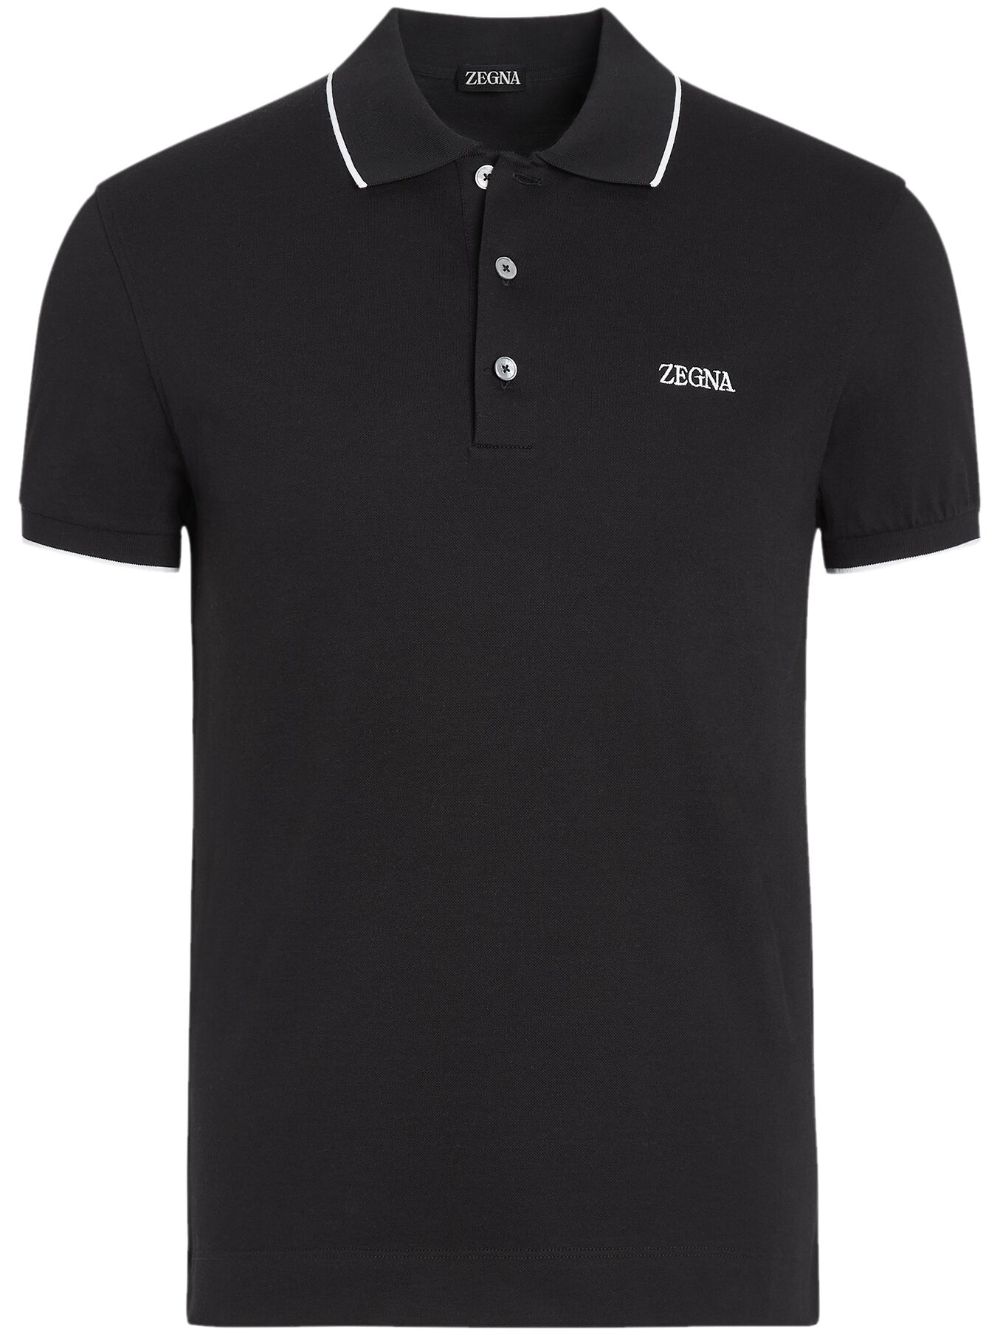 Zegna cotton polo shirt - Black von Zegna